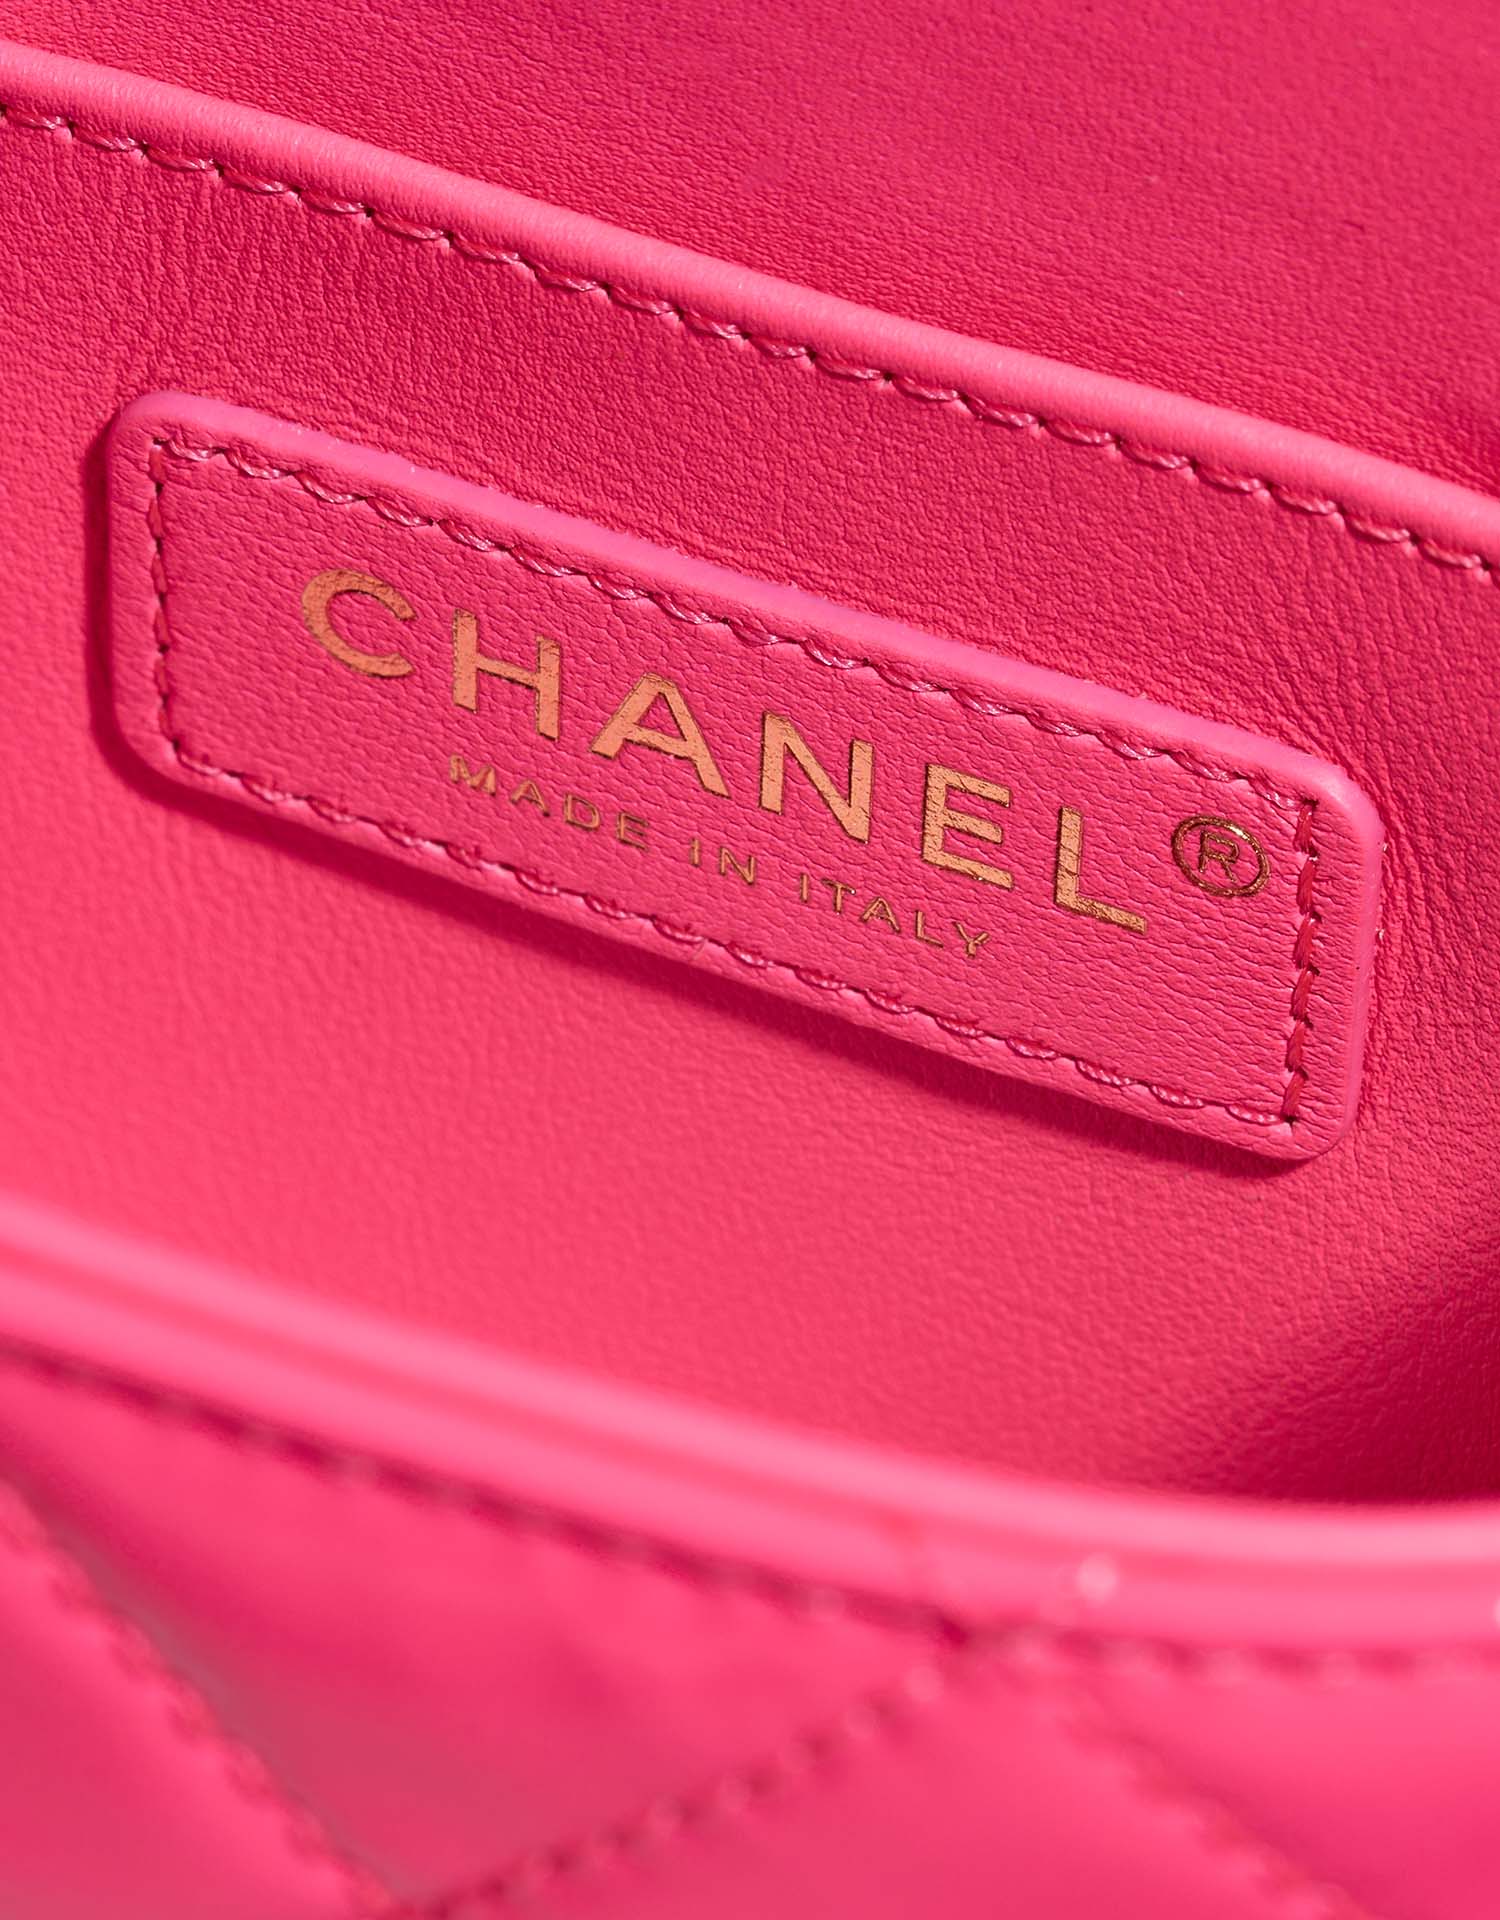 Chanel Vanity Small NeonPink Logo | Verkaufen Sie Ihre Designer-Tasche auf Saclab.com